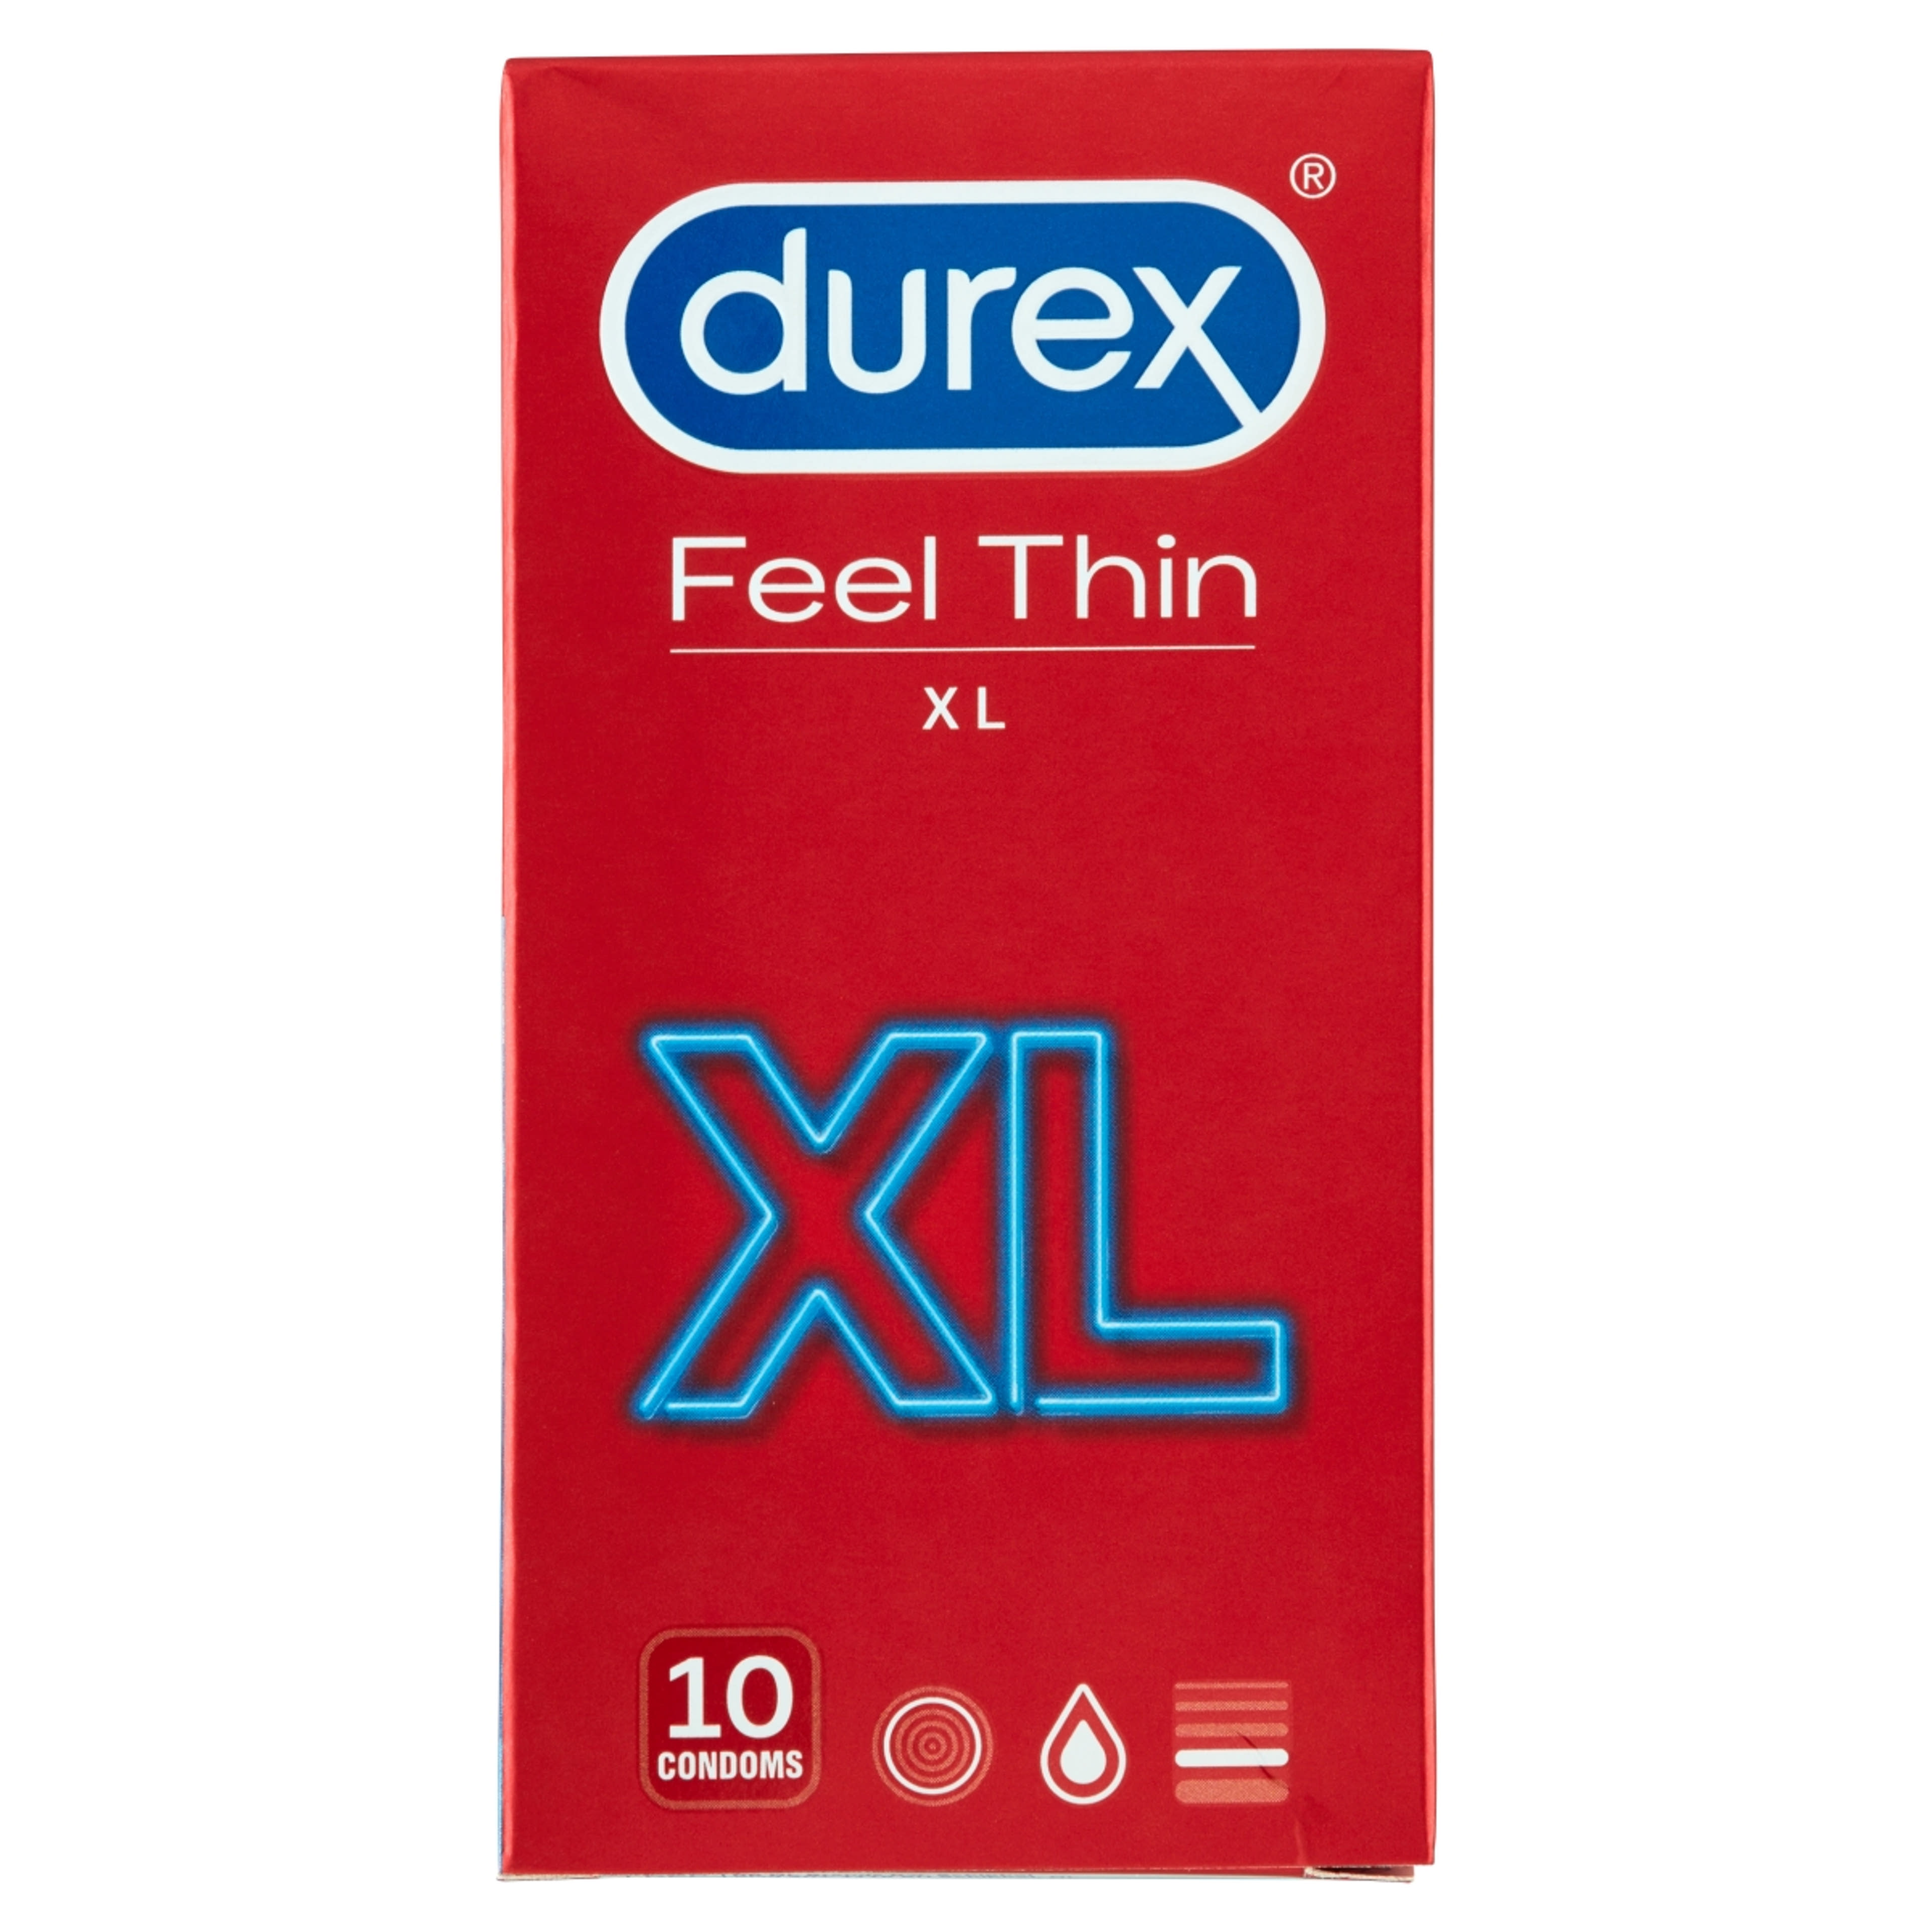 Durex óvszer feel thin xxl - 10 db